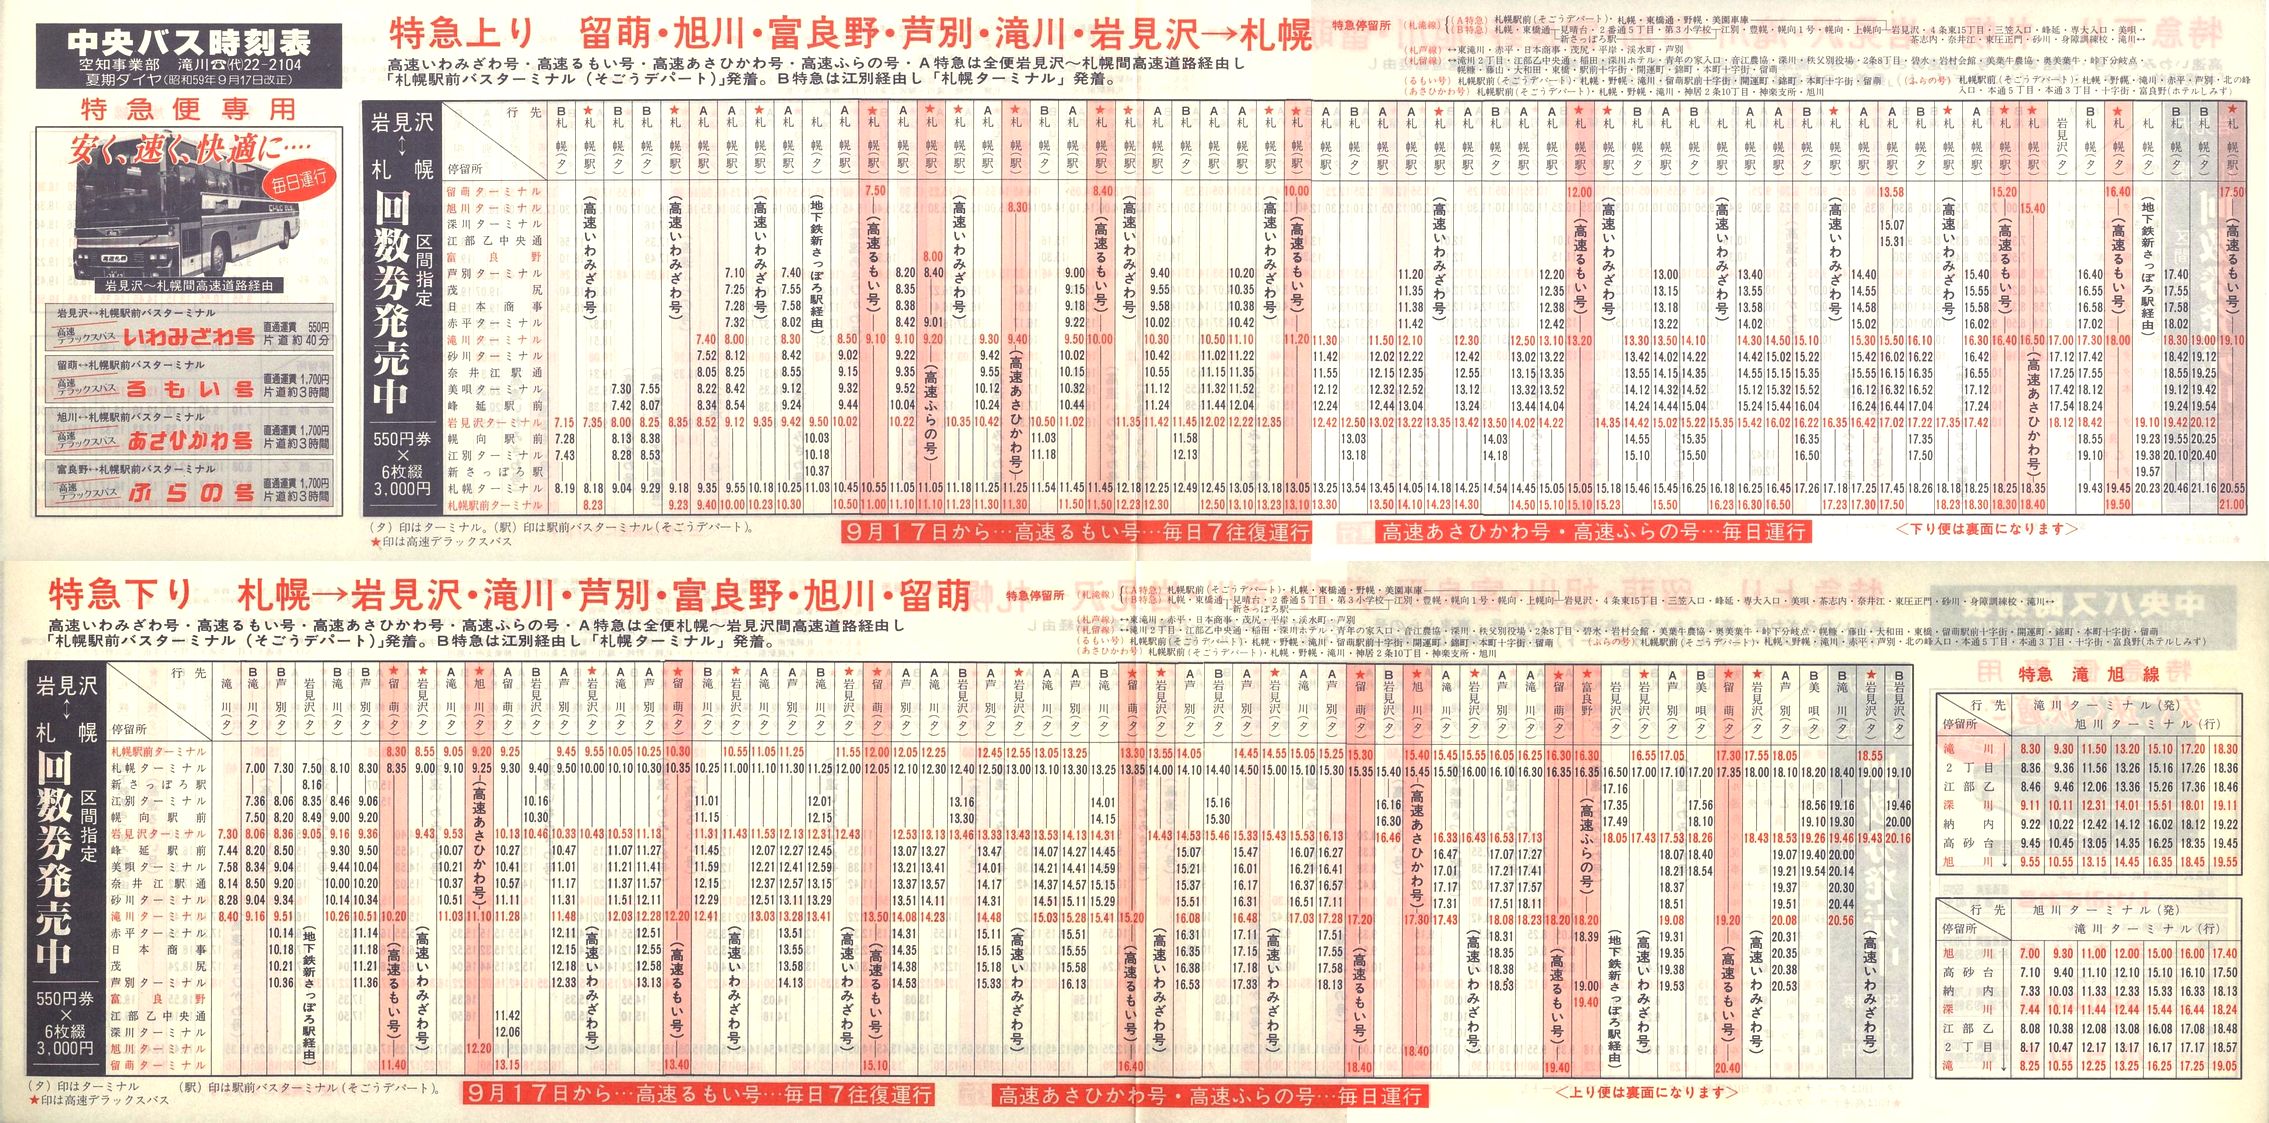 1984-09-17改正_北海道中央バス(空知)_特急便時刻表